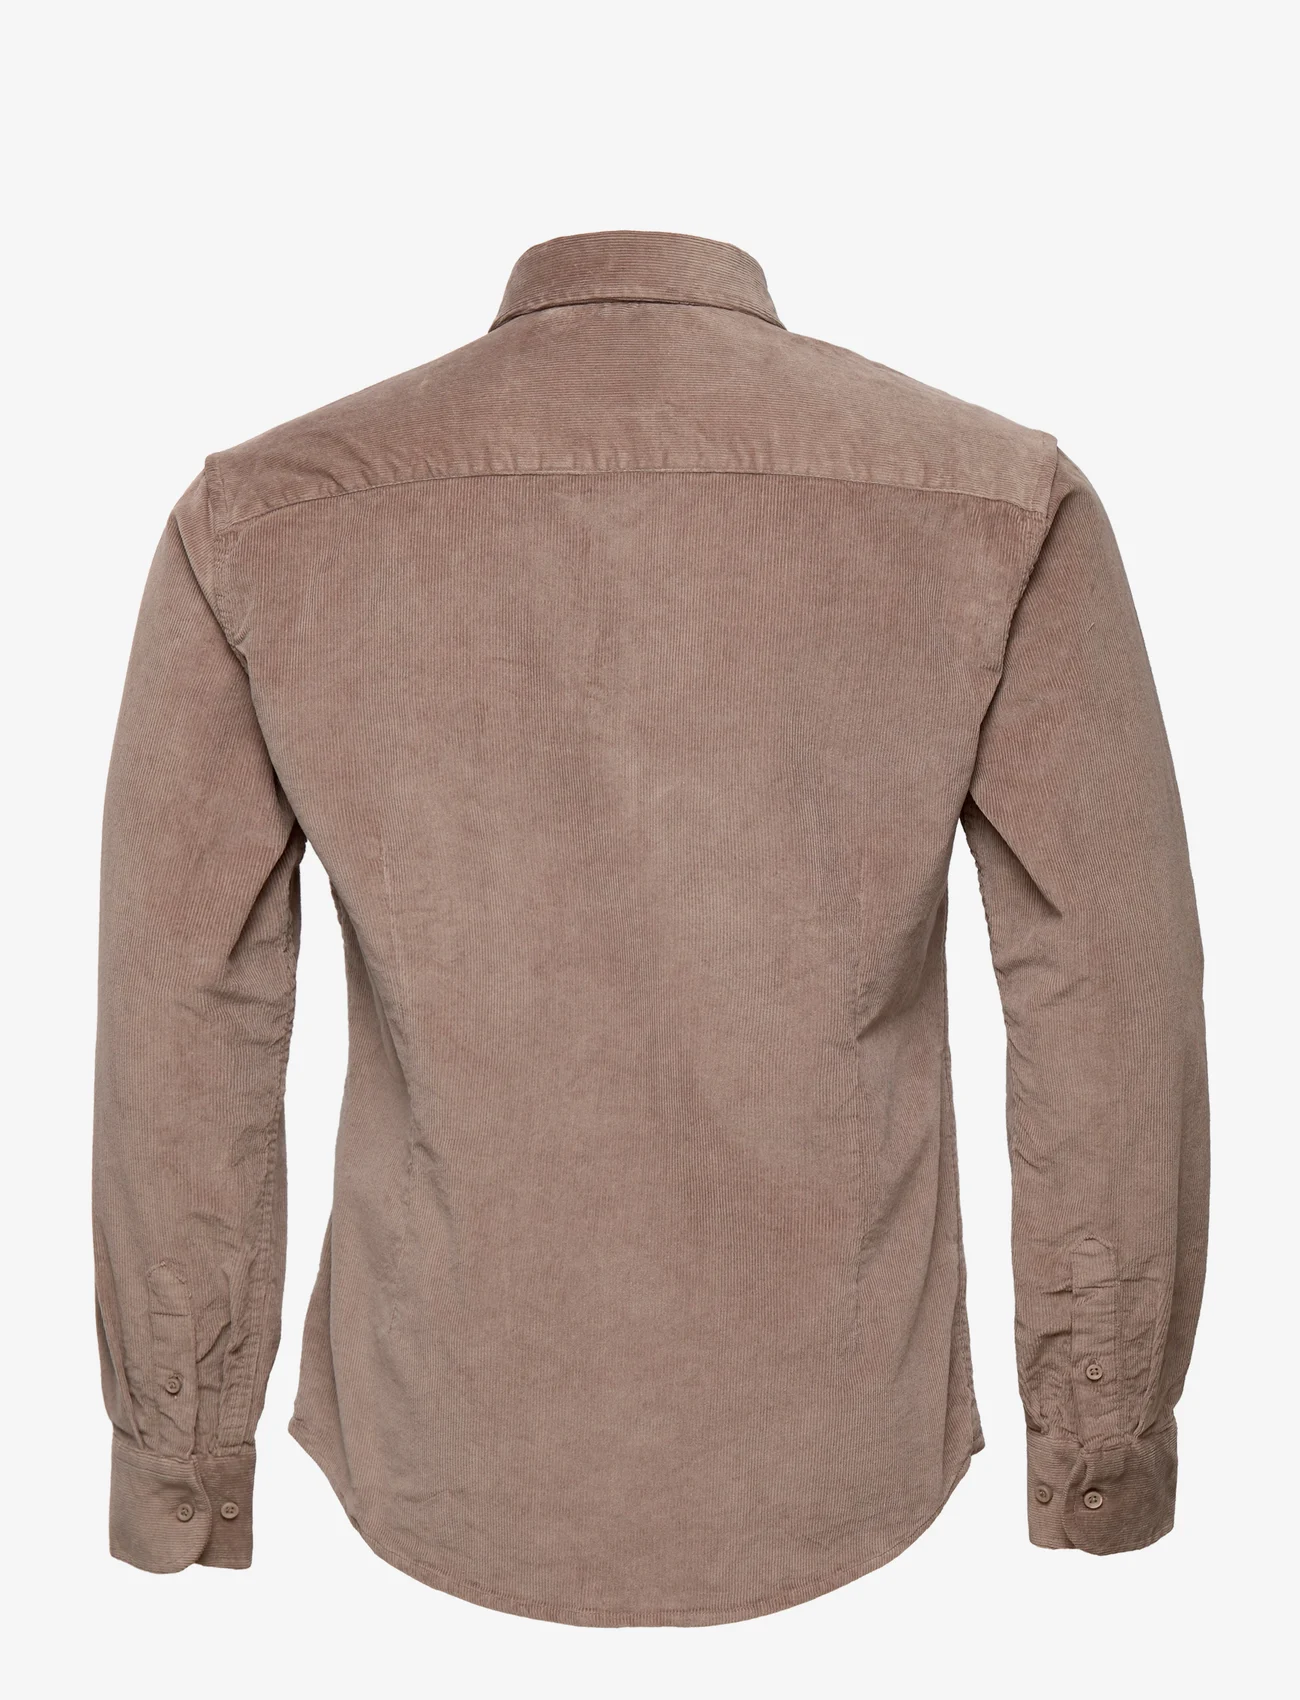 Bruun & Stengade - BS Kongsberg casual slim fit shirt - fløjlsskjorter - mud - 1